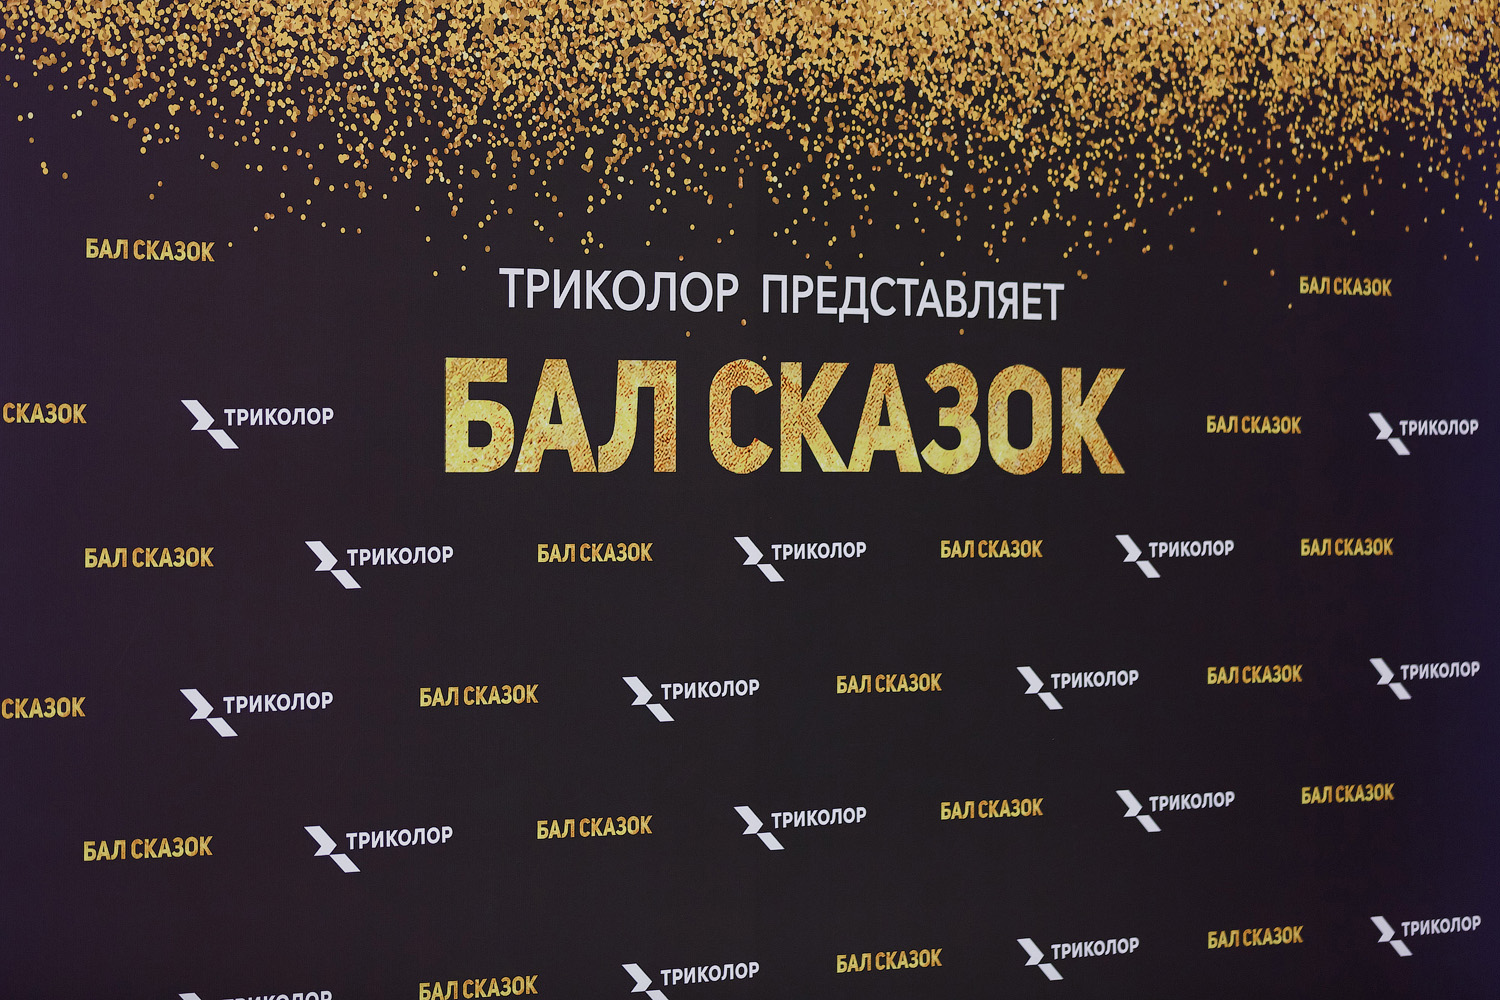 Триколор стал партнёром премьеры «Бала сказок» в Кремле